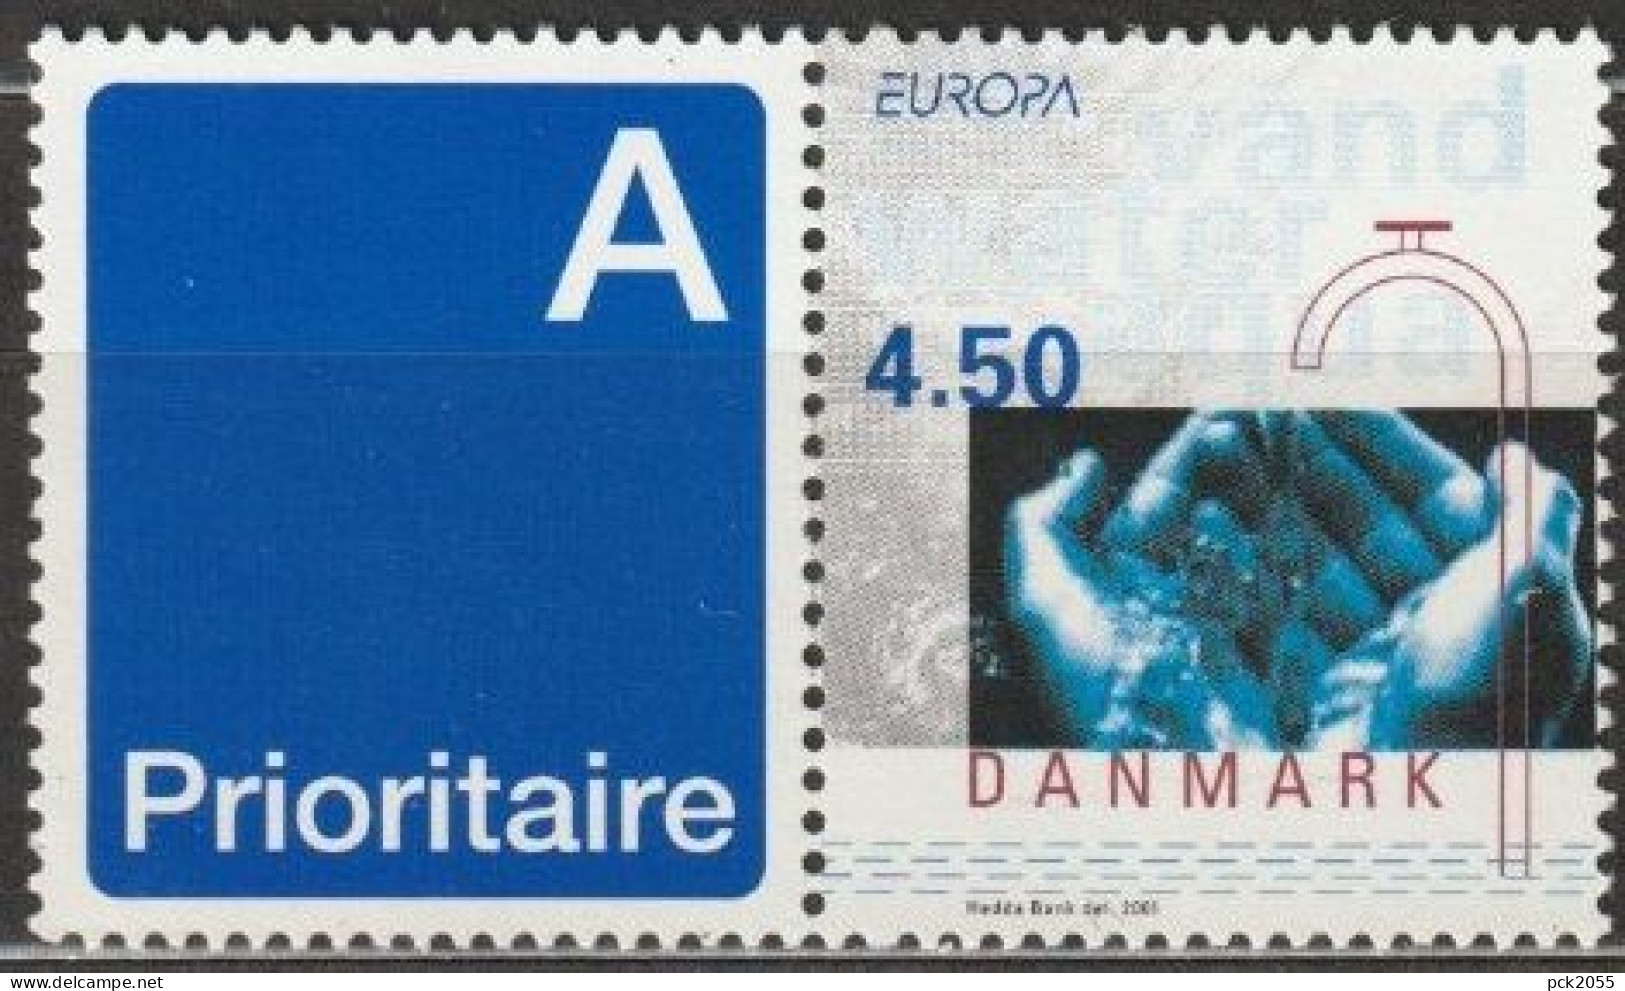 Dänemark 2001 Mi-Nr.1277 ZF ** Postfrisch Europa Lebemsspender Wasser ( B 2843) - Ungebraucht